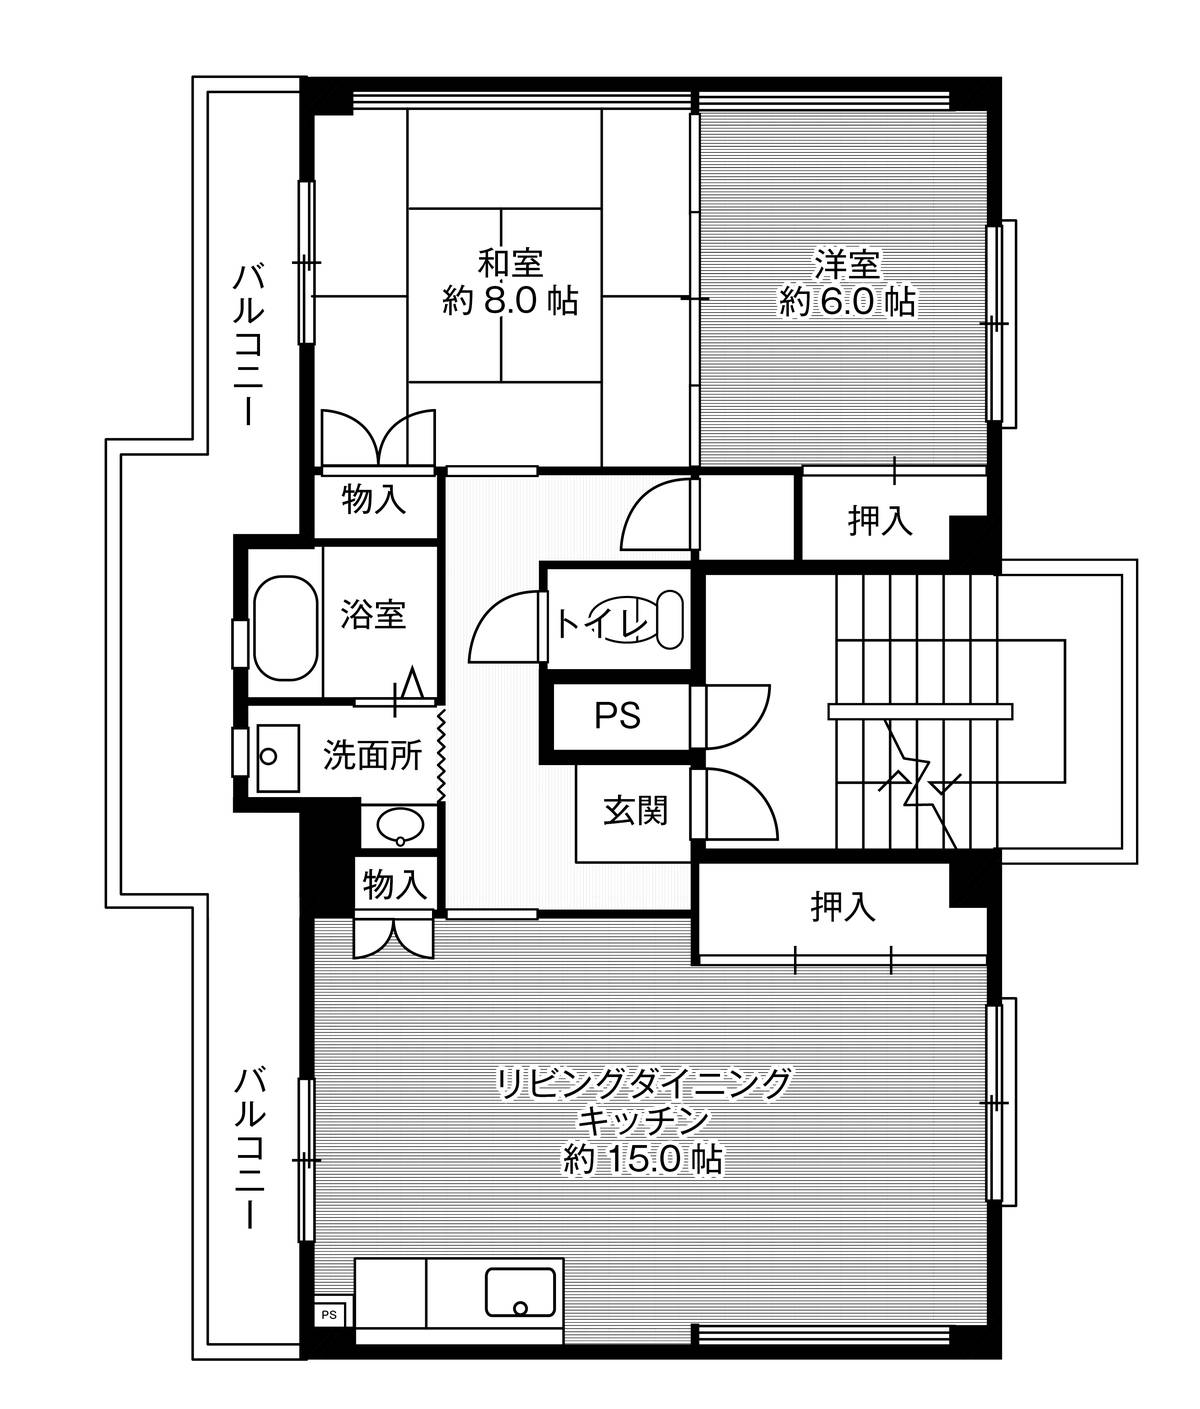 Sơ đồ phòng 2LDK của Village House Ishinomaki ở Toyohashi-shi